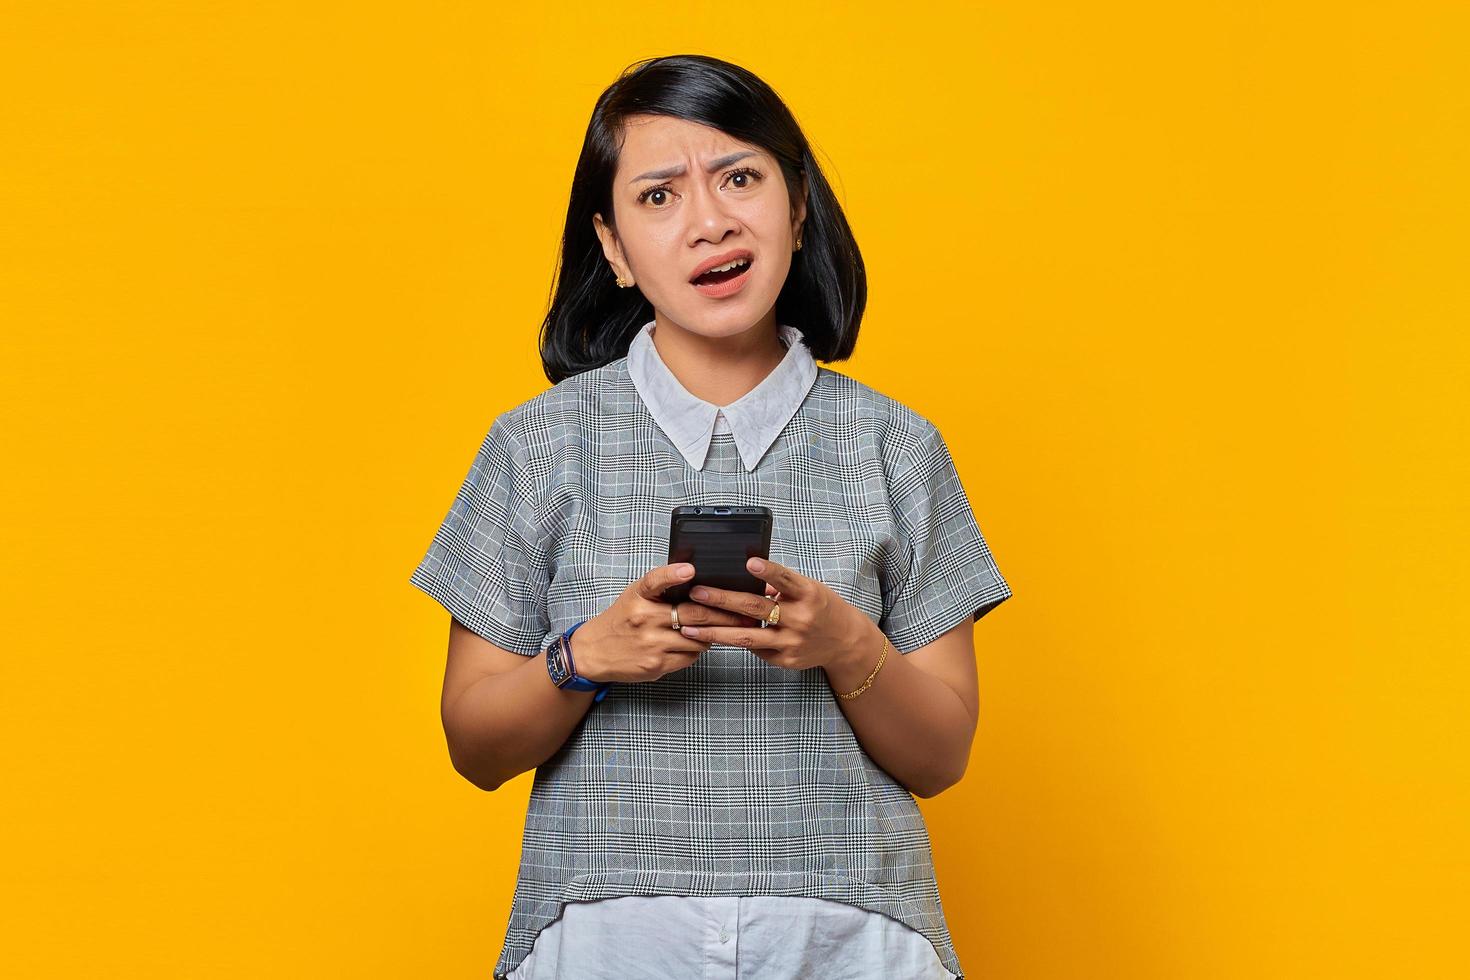 porträtt av olycklig ung asiatisk kvinna som håller mobiltelefon och tittar på kameran isolerad på gul bakgrund foto